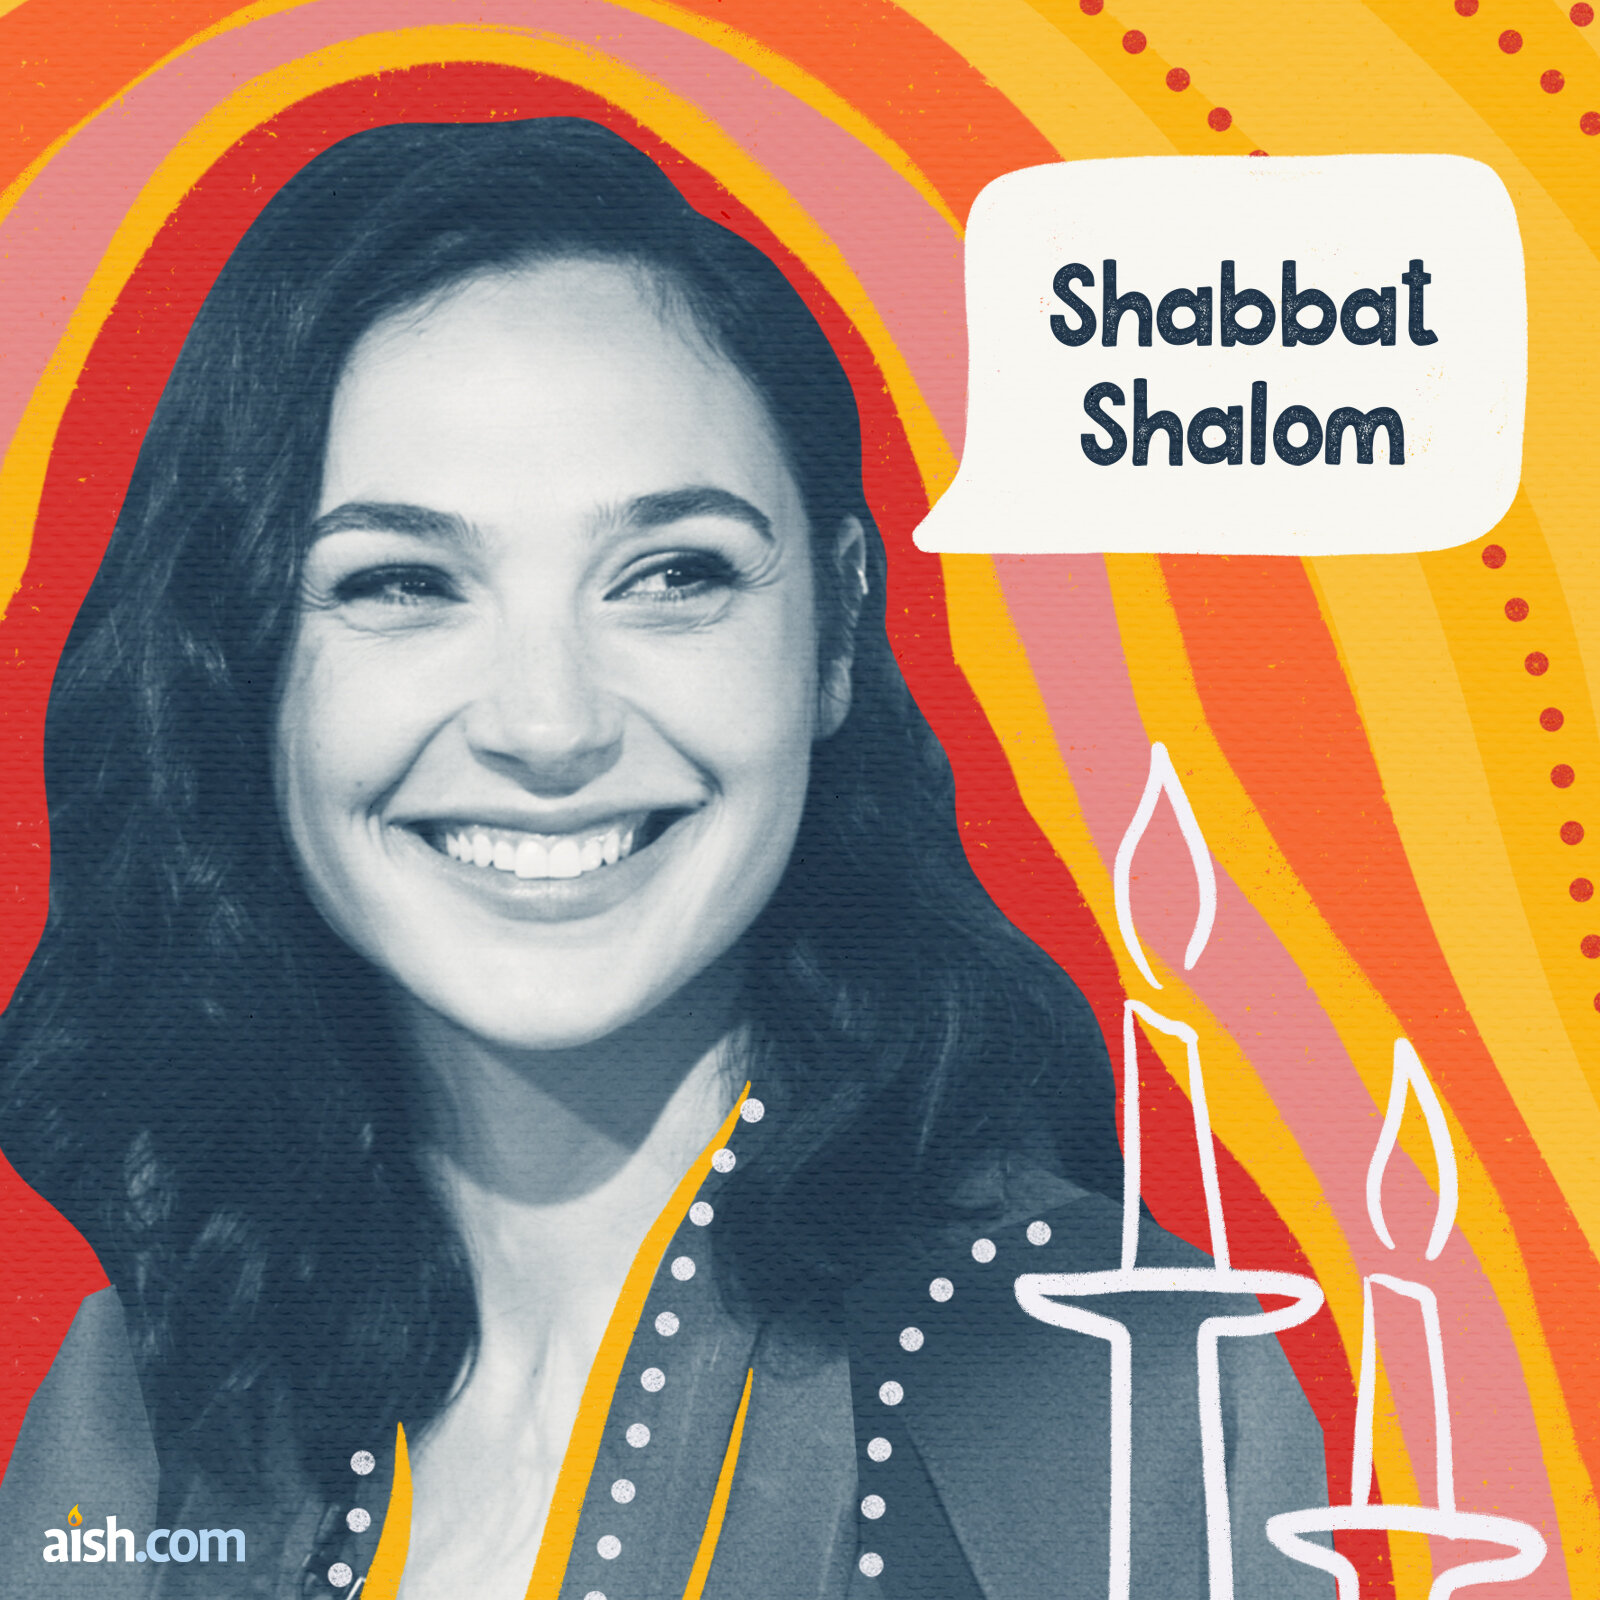 Shabbat-GalGadotArtboard 1.jpg